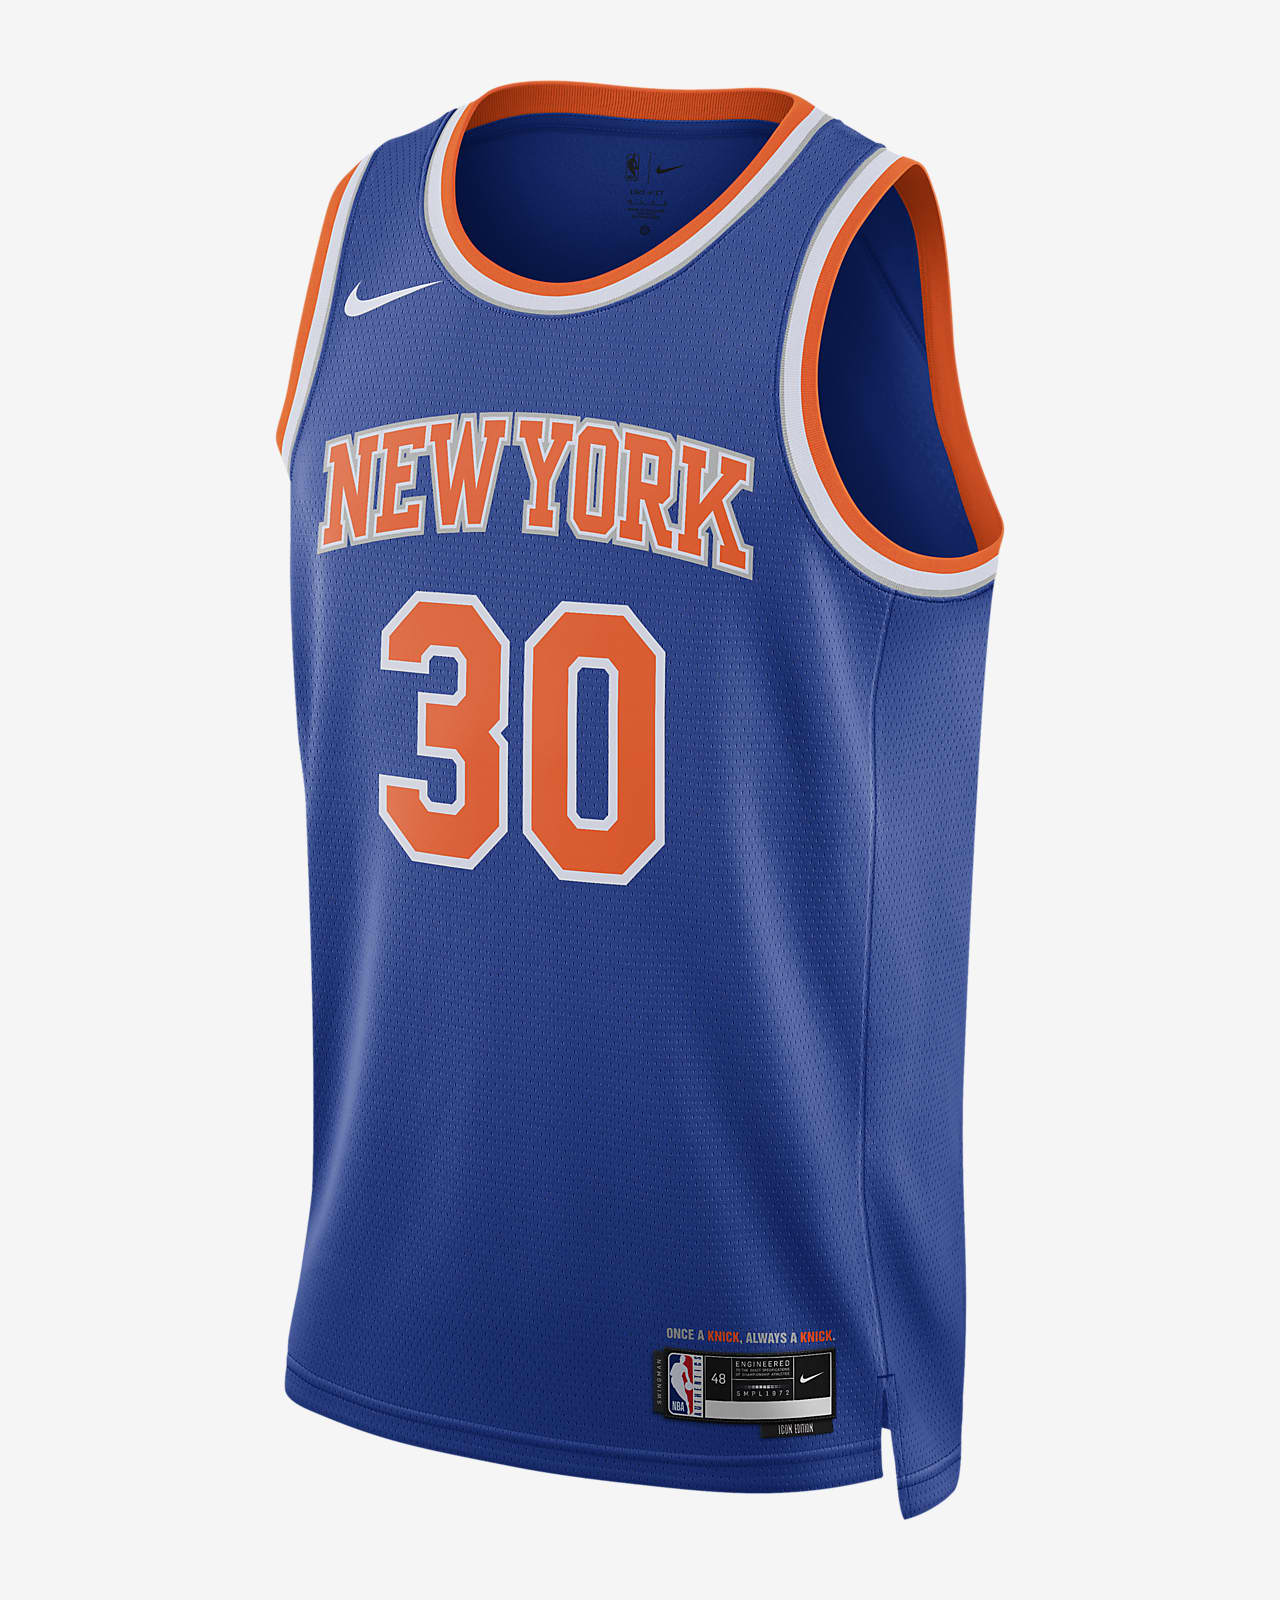 New York Knicks National Basketball Association 2023 Hawaiian Shirt For Men  Women - Freedomdesign